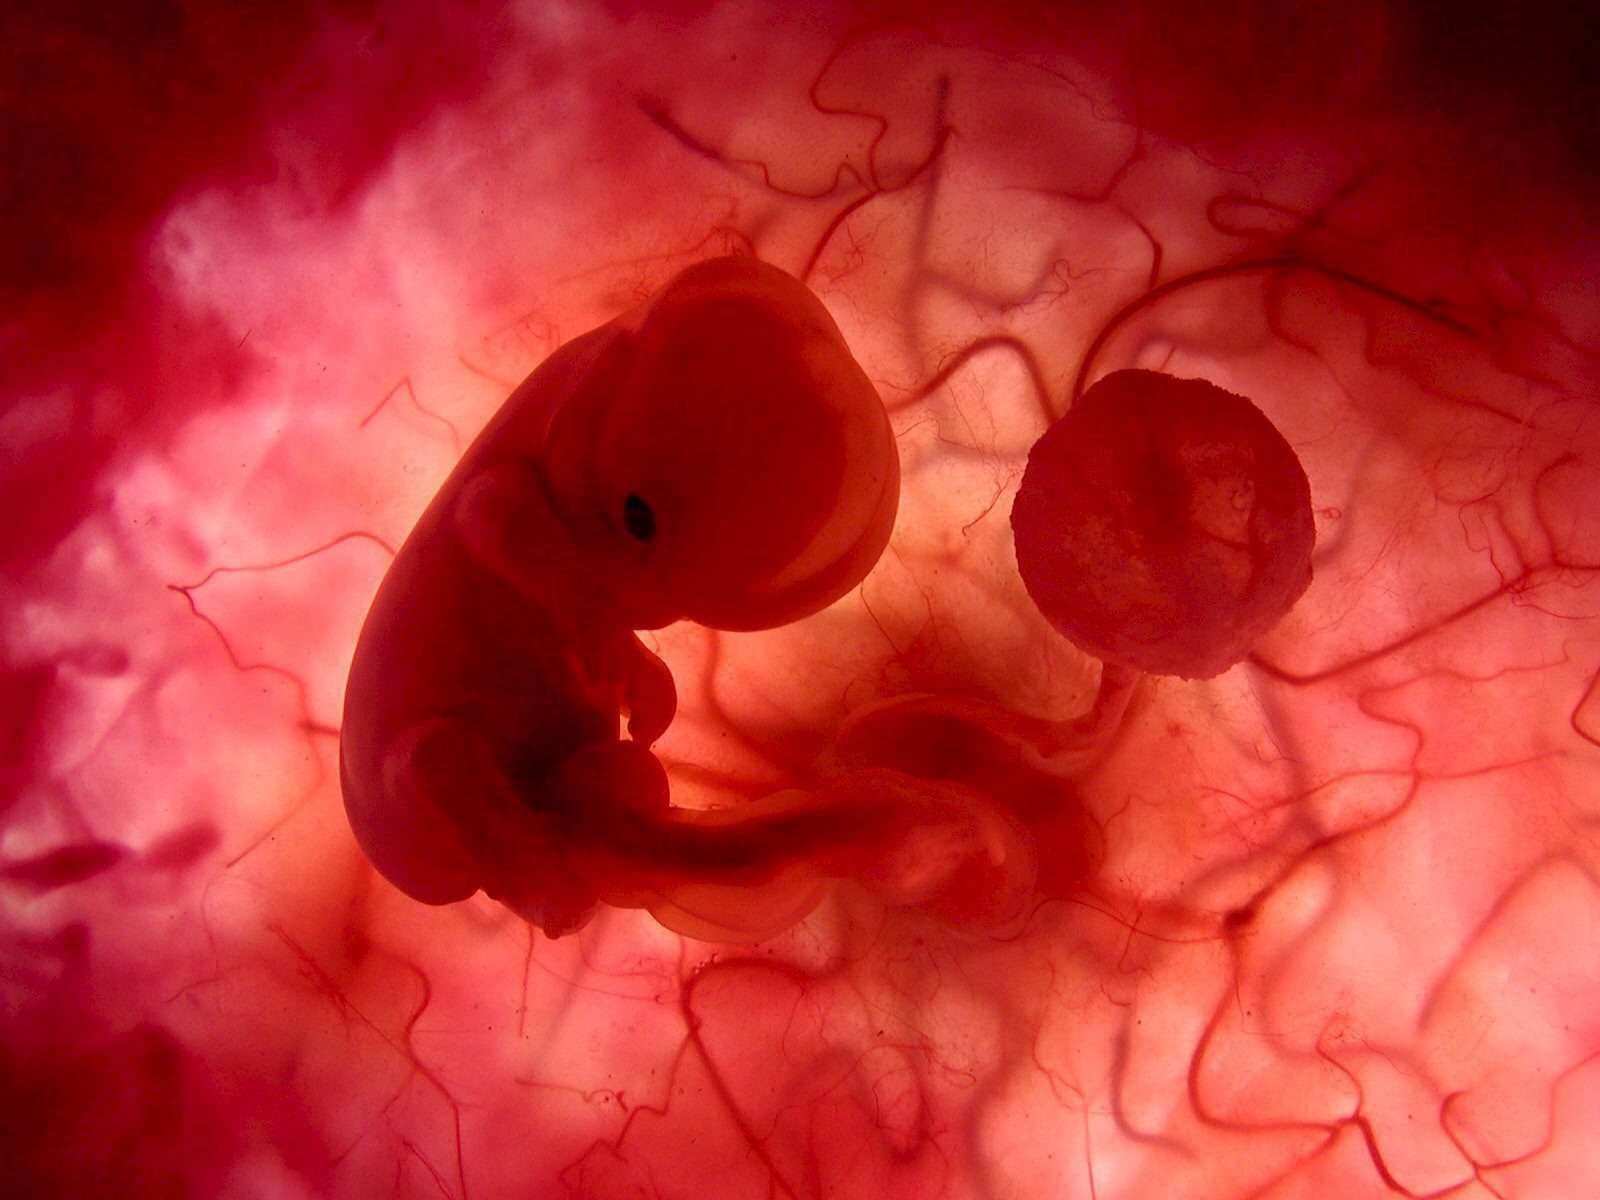 Fosterets utveckling - embryot i livmodern med navelsträngen och moderkakan